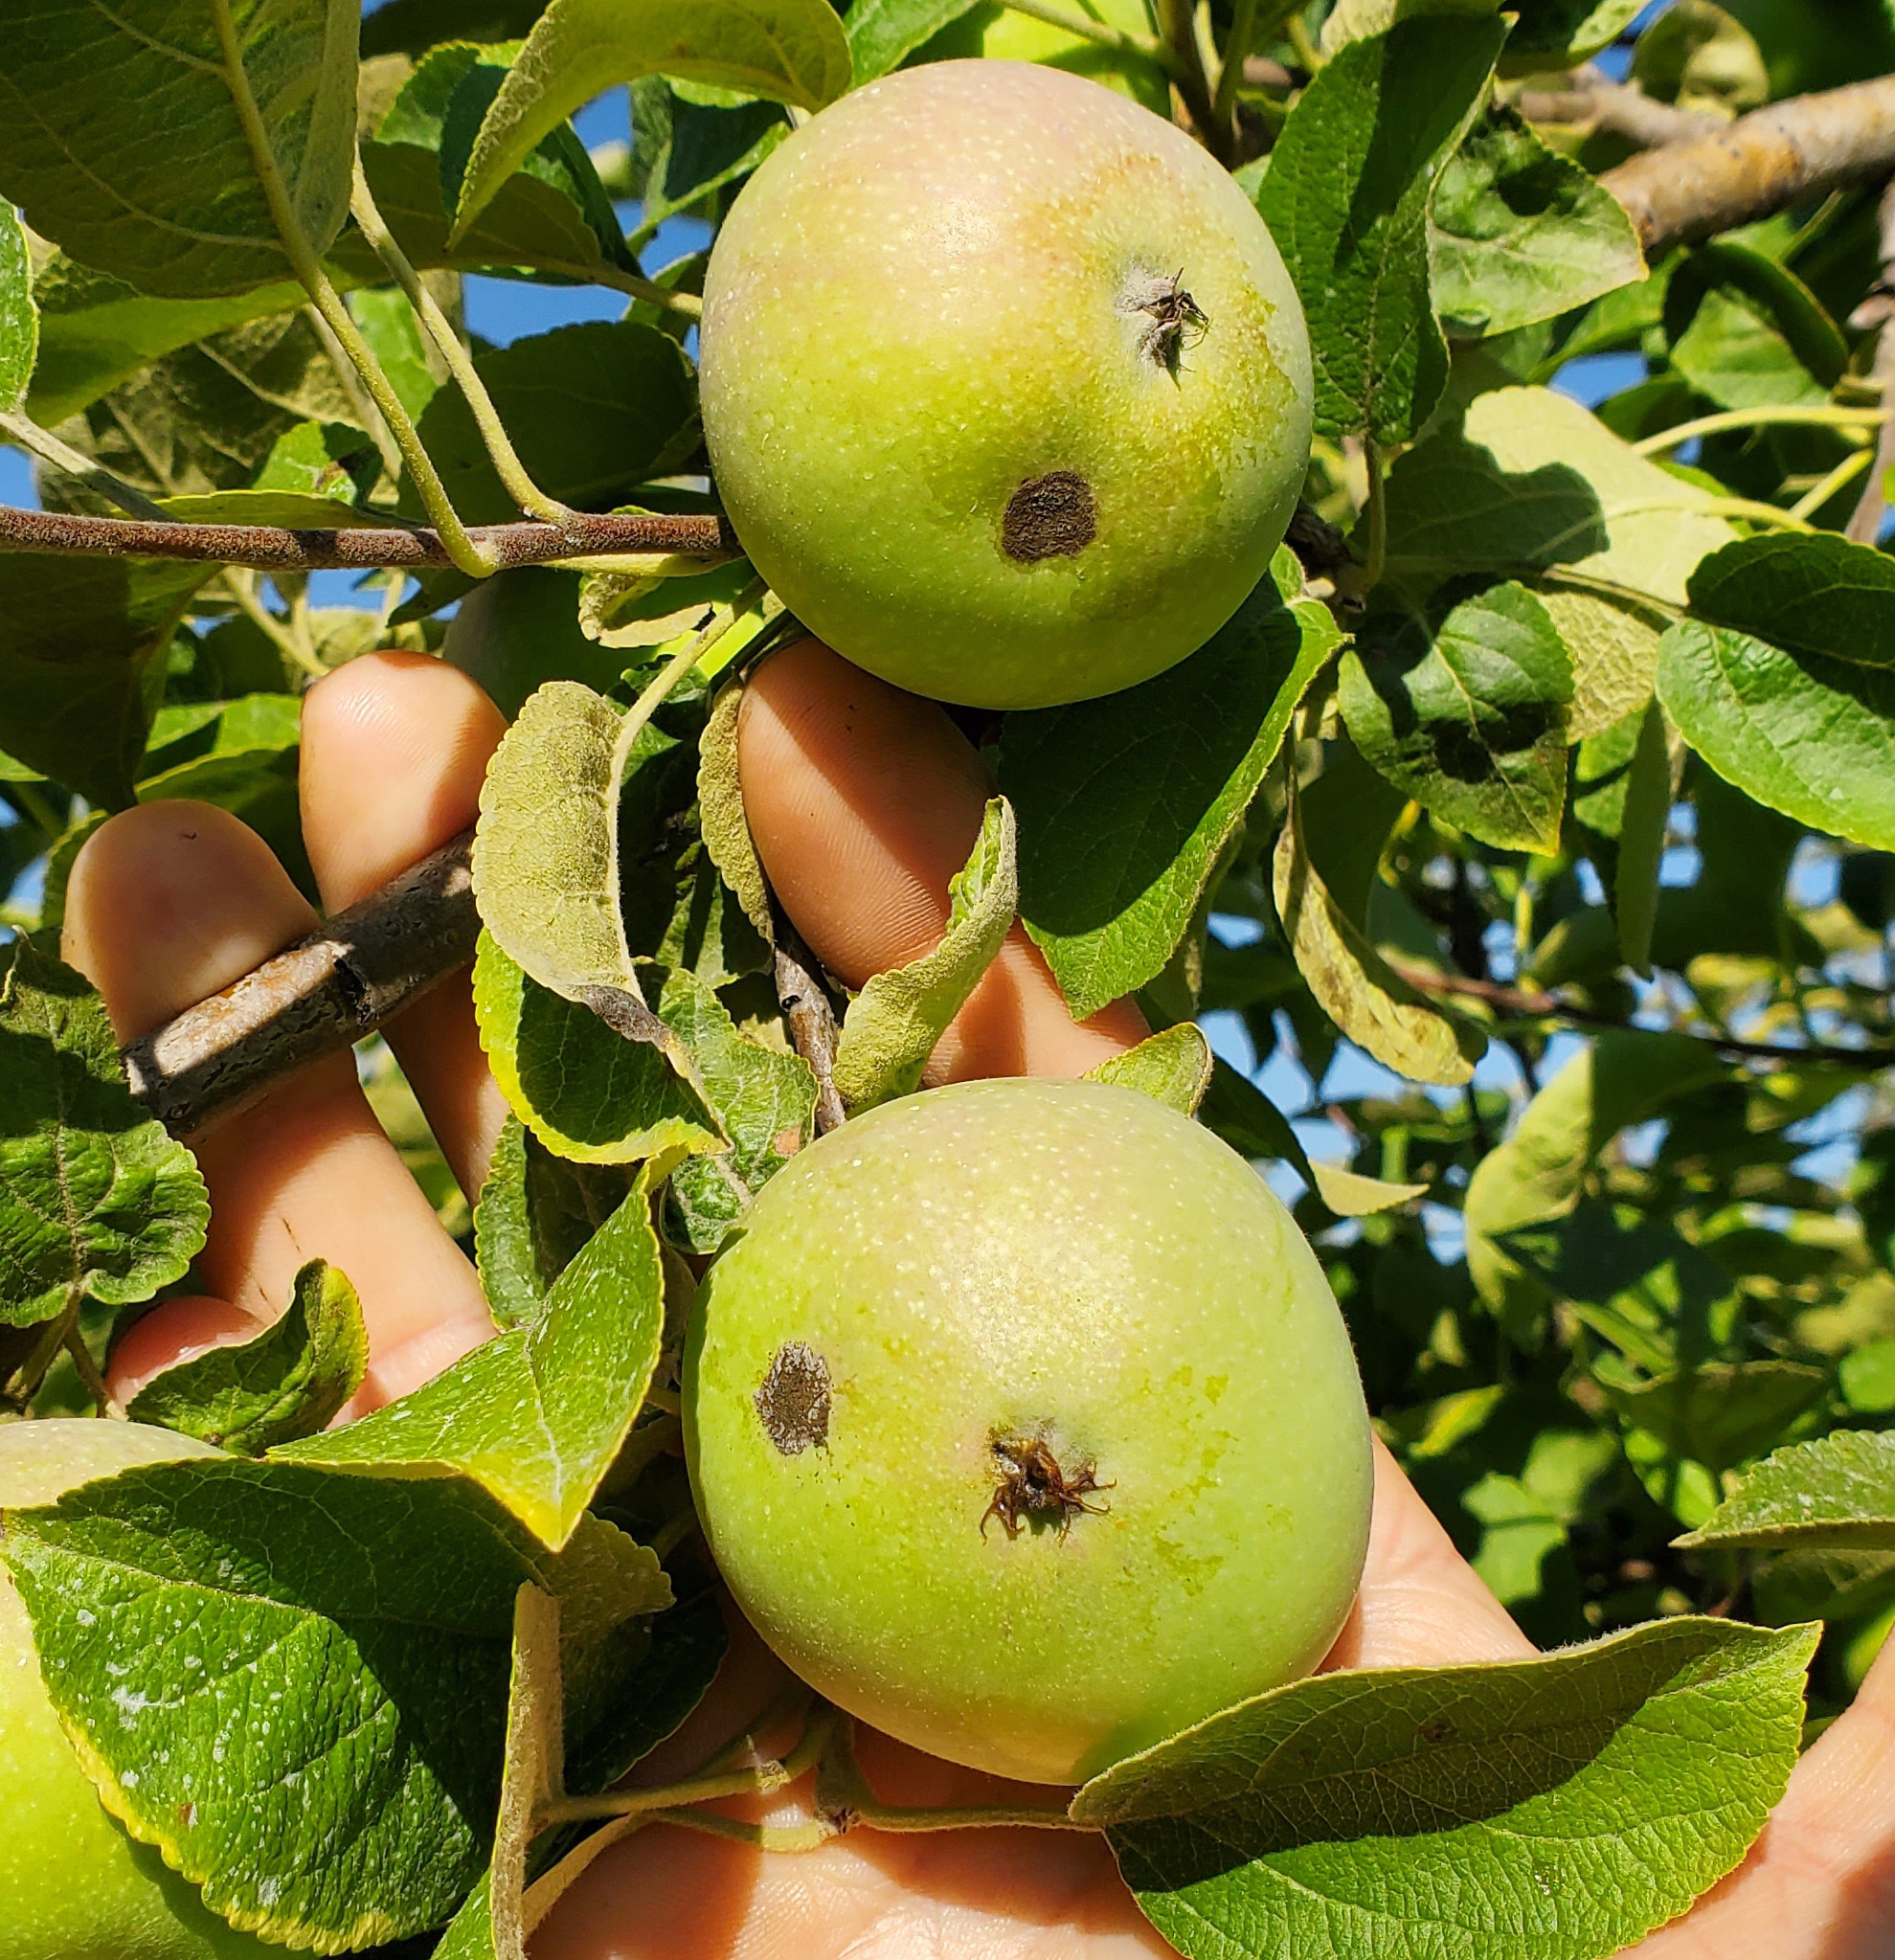 Apple scab on apples